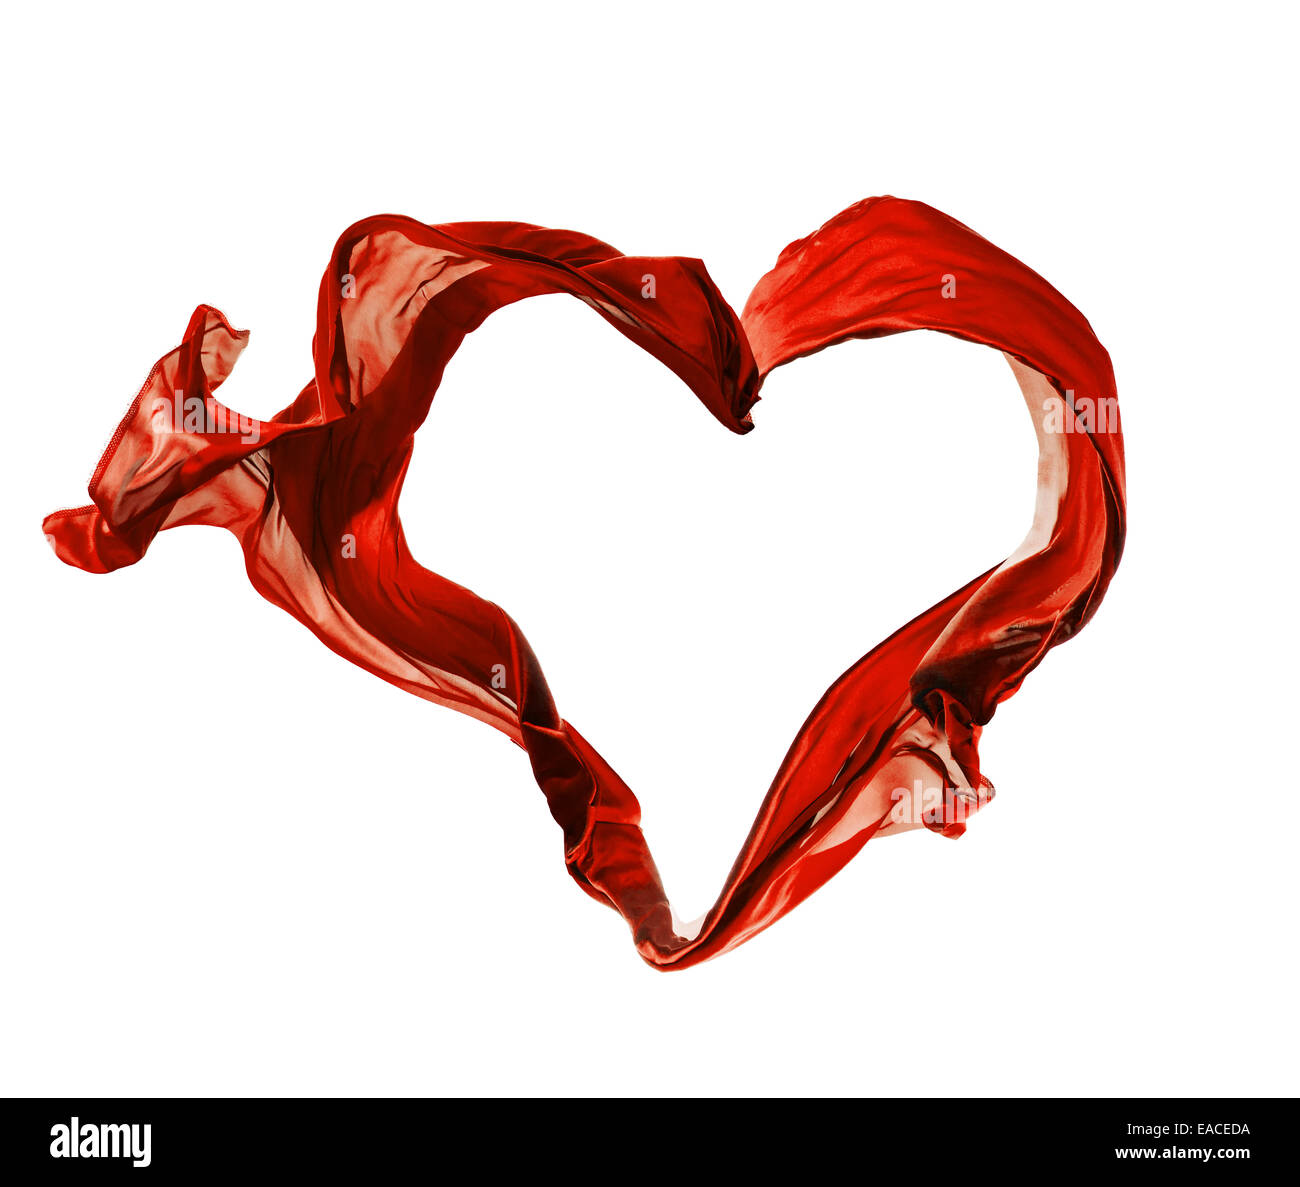 Vereinzelte Aufnahmen von frieren Bewegung der roten Satin in Herzform, isoliert auf weißem Hintergrund Stockfoto